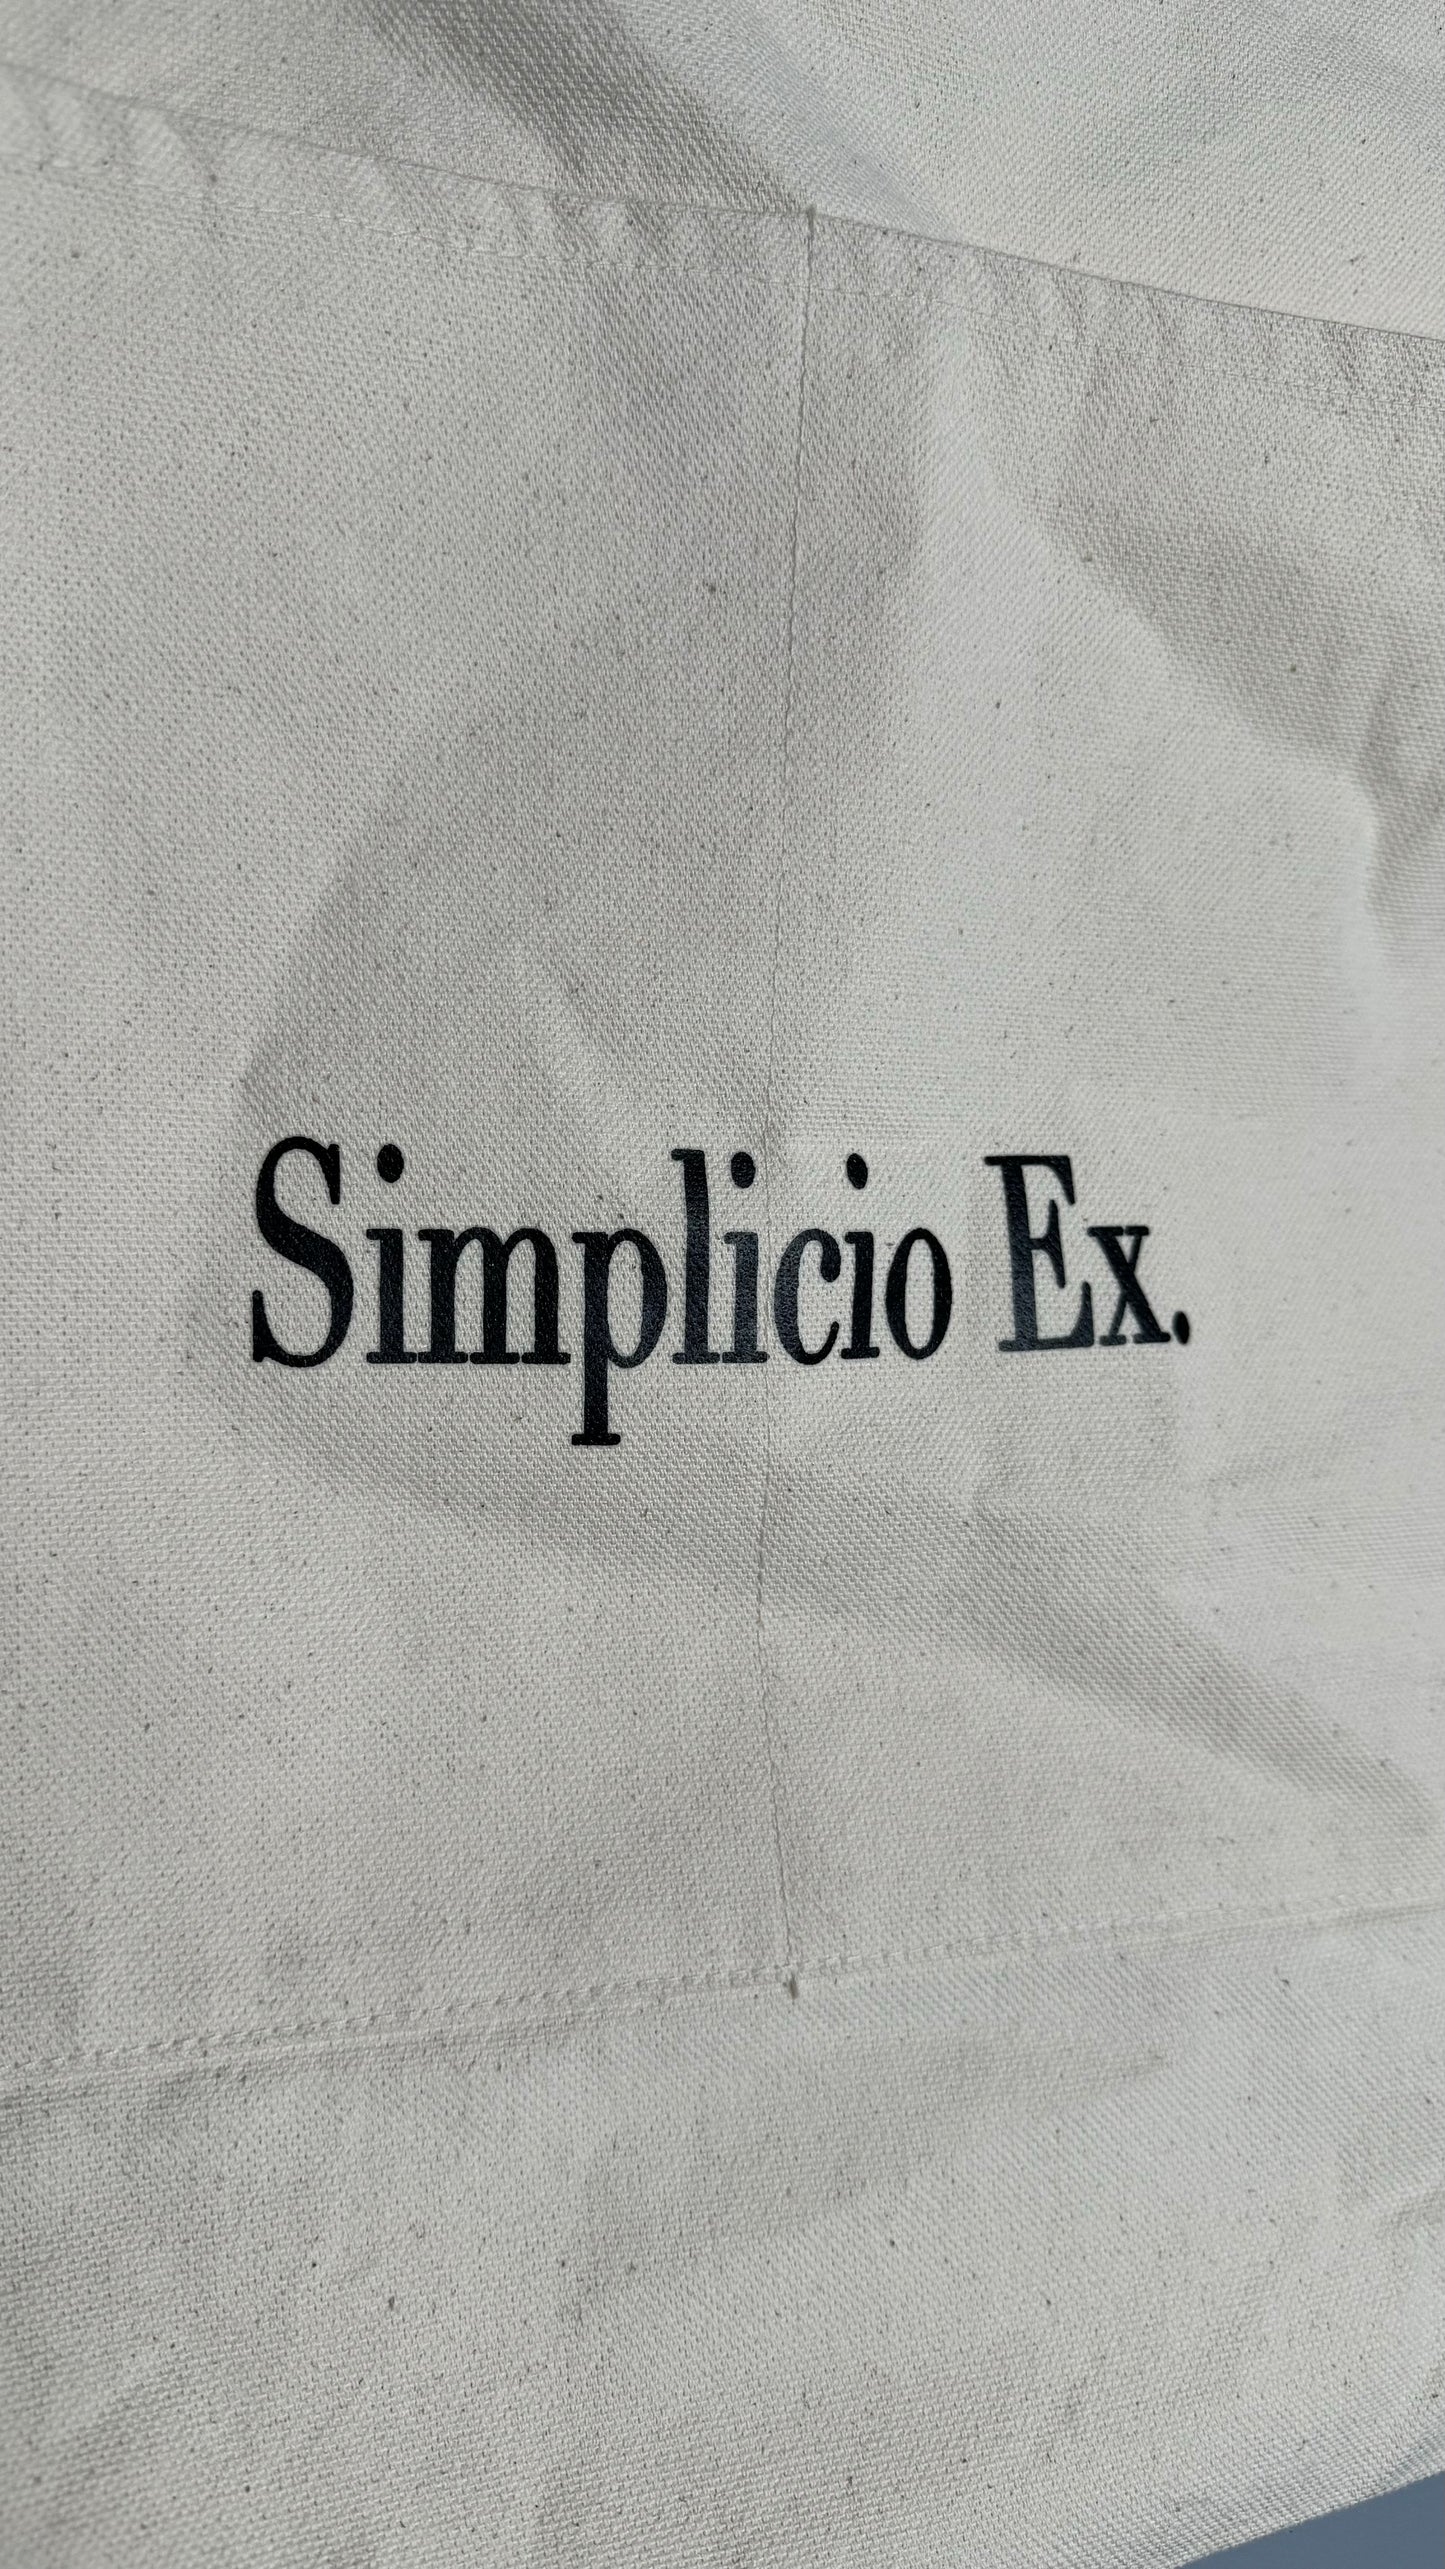 Canvas Simplicio Ex. Tote